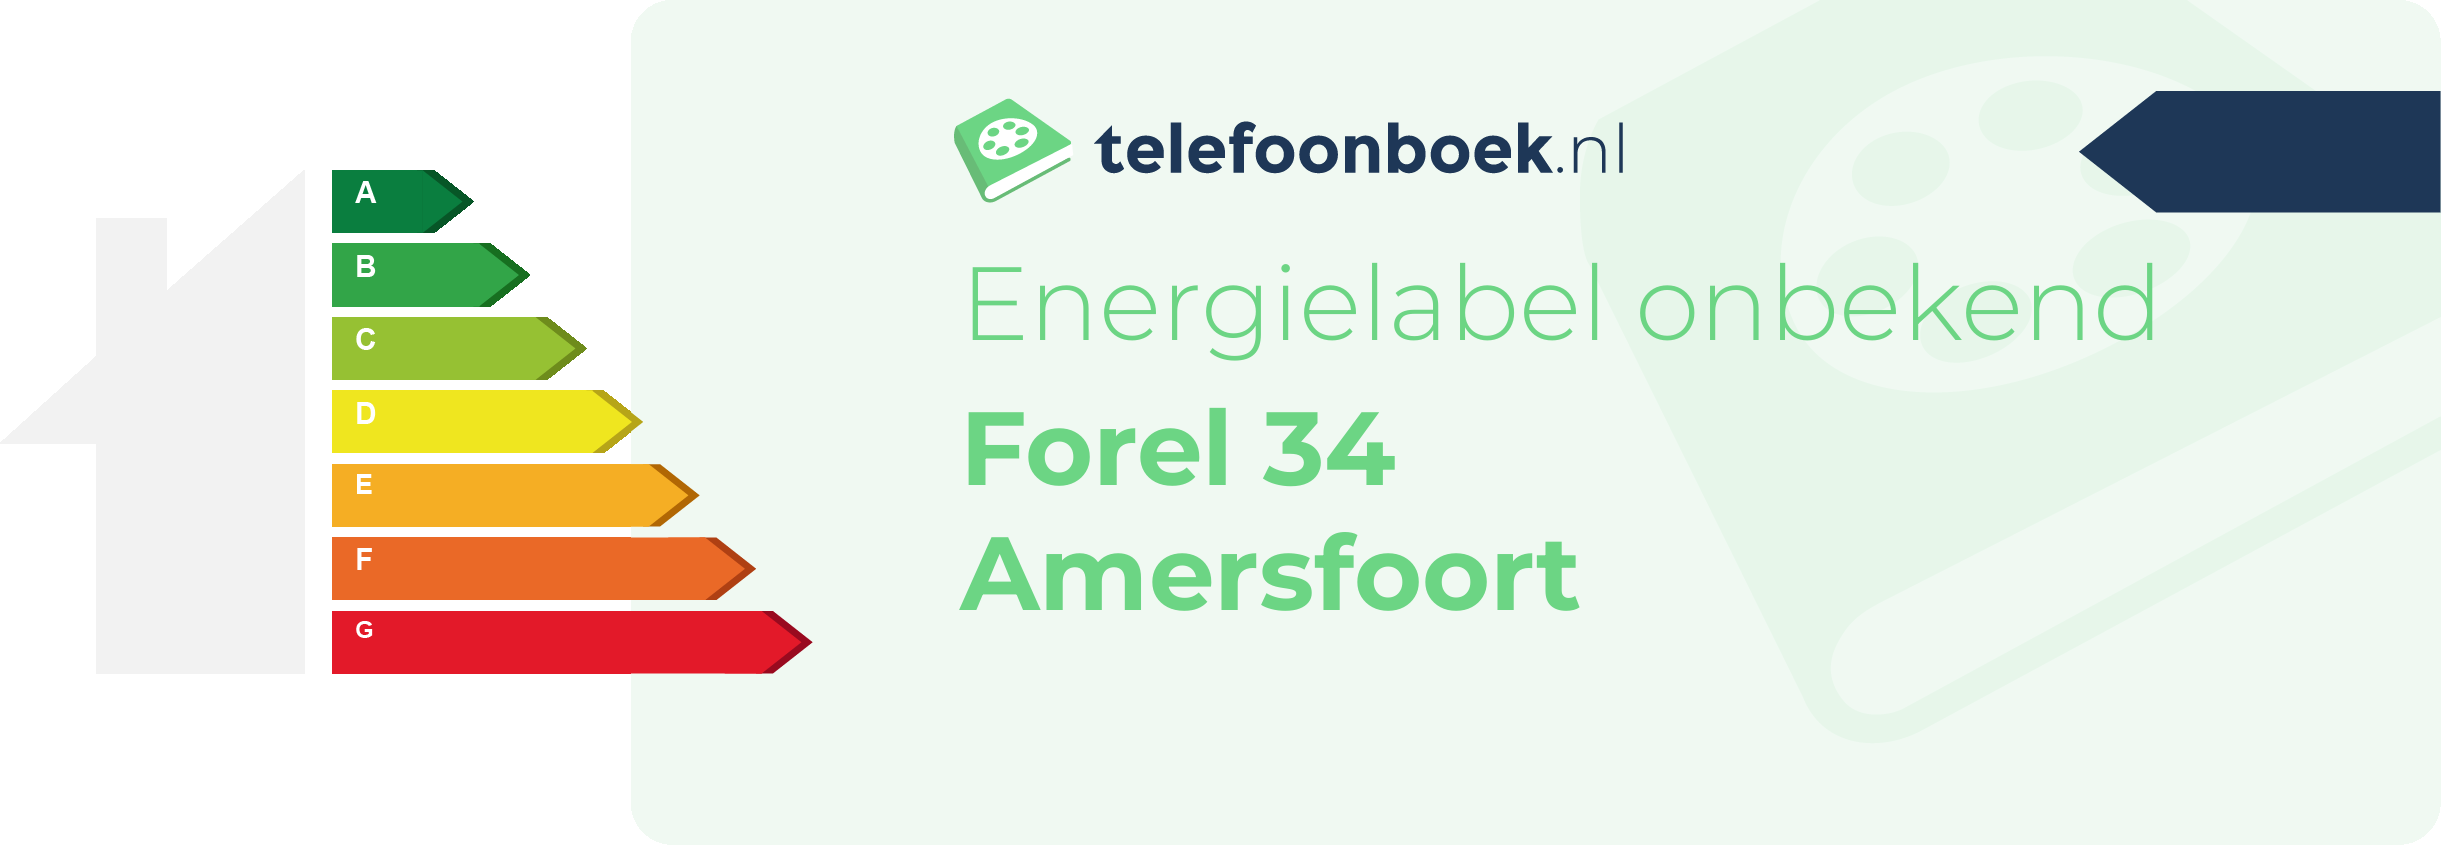 Energielabel Forel 34 Amersfoort